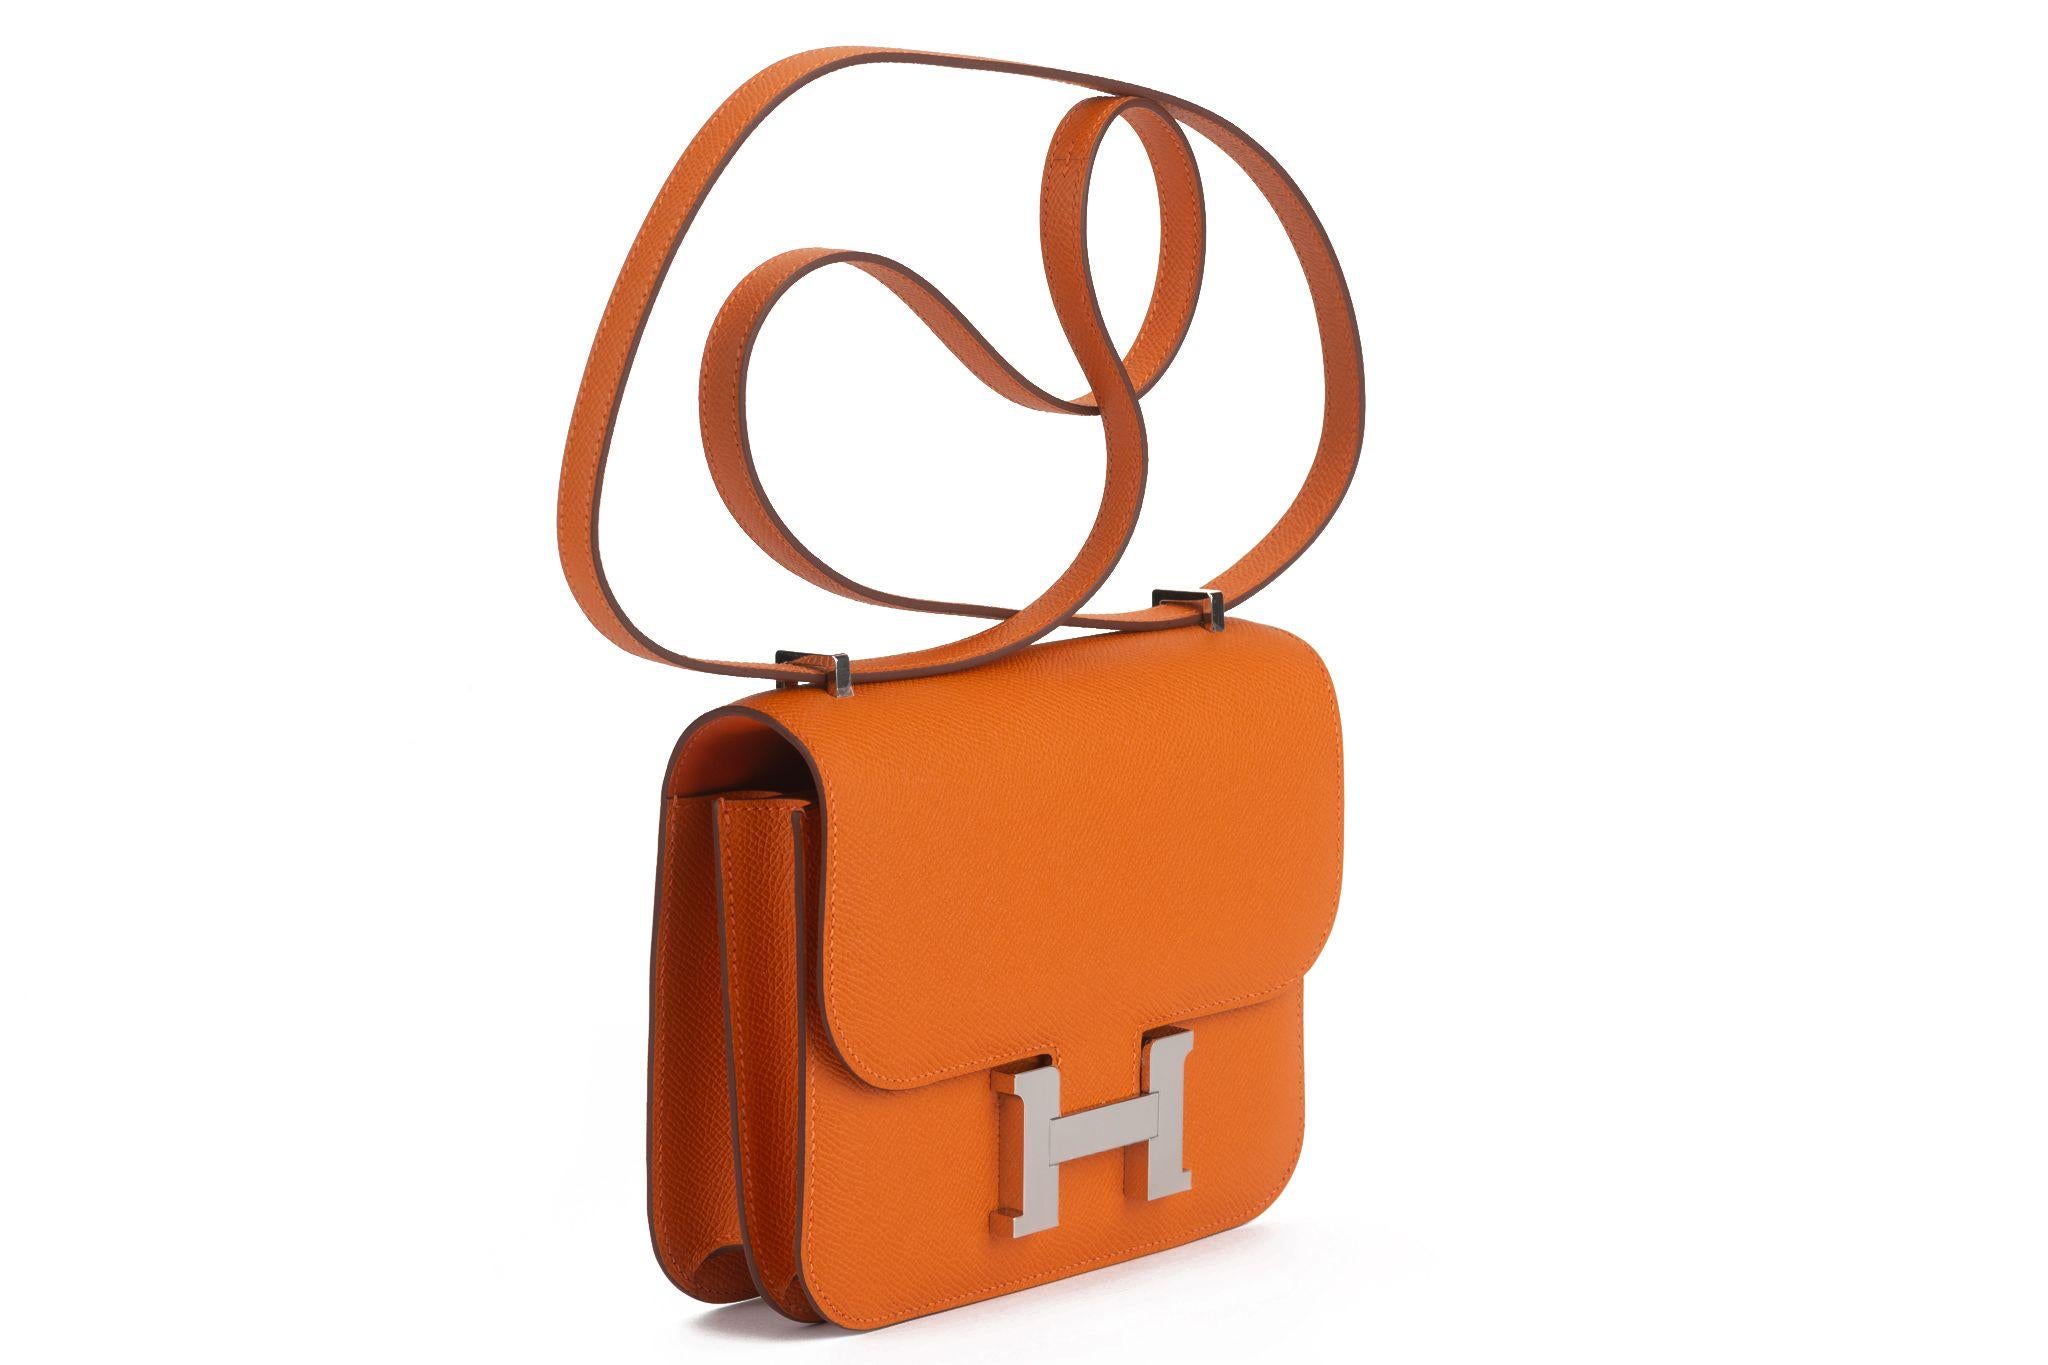 Hermes Constance Lederhandtasche ist Ihre perfekte kleine schicke Tasche mit orangefarbenem Epsom-Leder, Schulterriemen, einer Frontklappe und Palladium H-Logo-Hardware. Datumsstempel B. Kommt mit Spiegel, Filz, Booklet, Original-Schutzumschlag und